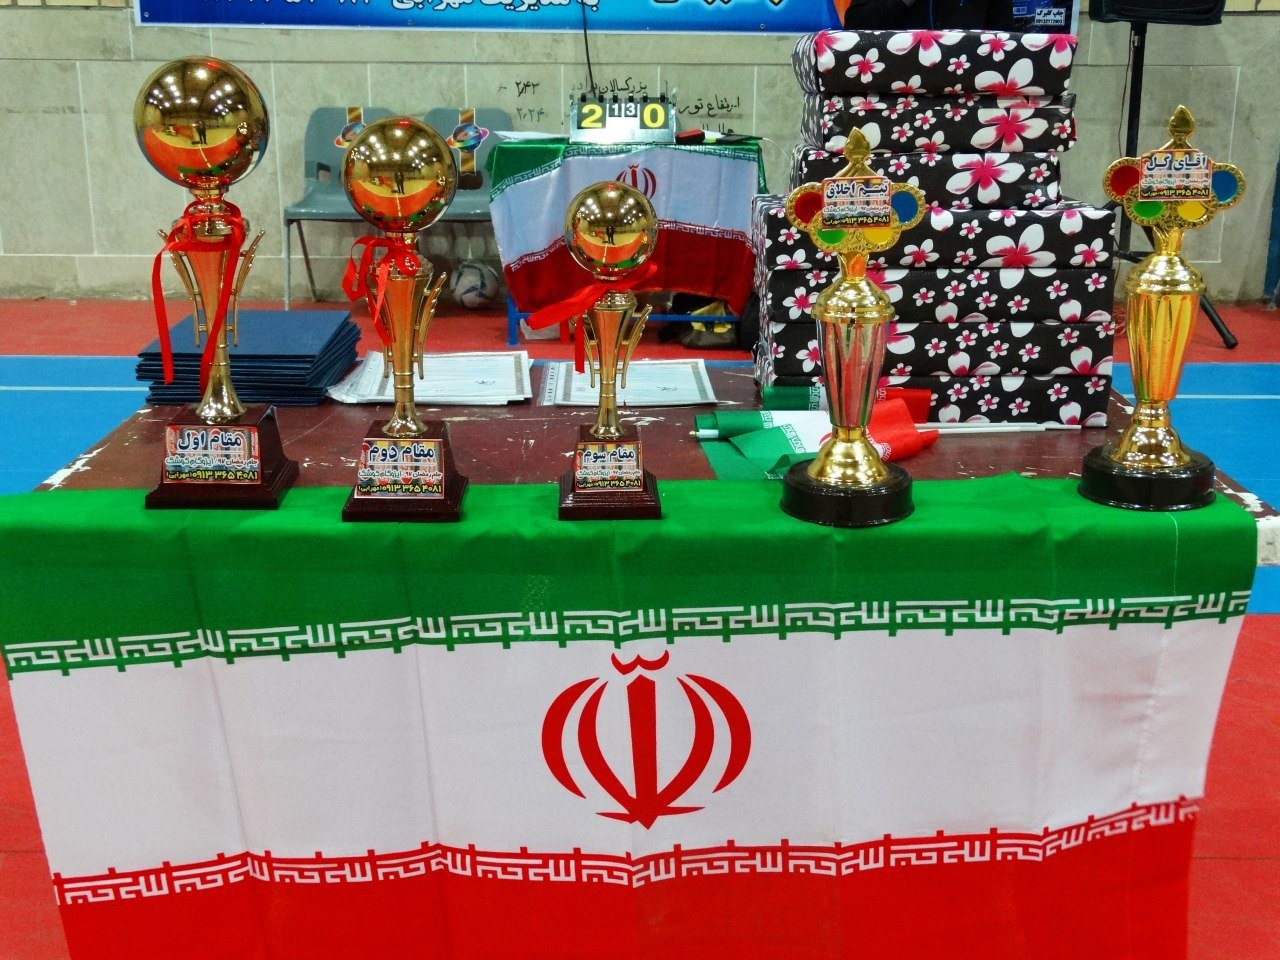 قهرمانی آلفا در فوتسال جام رمضان شهر کوشک خمینی شهر